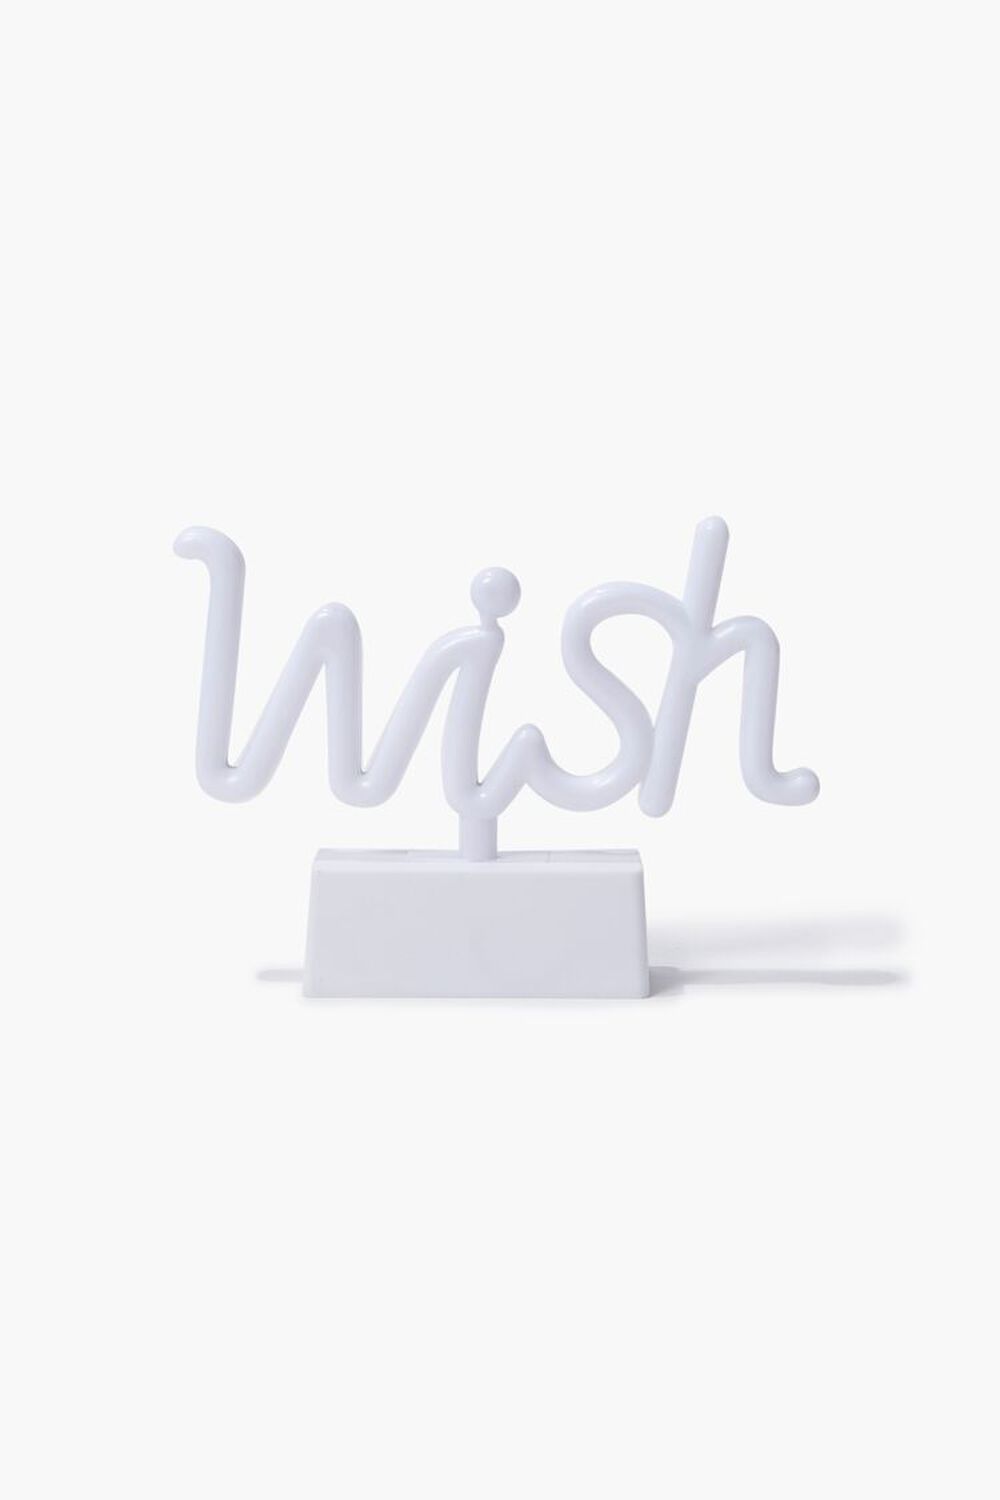 WHITE Wish LED Table Light, image 1